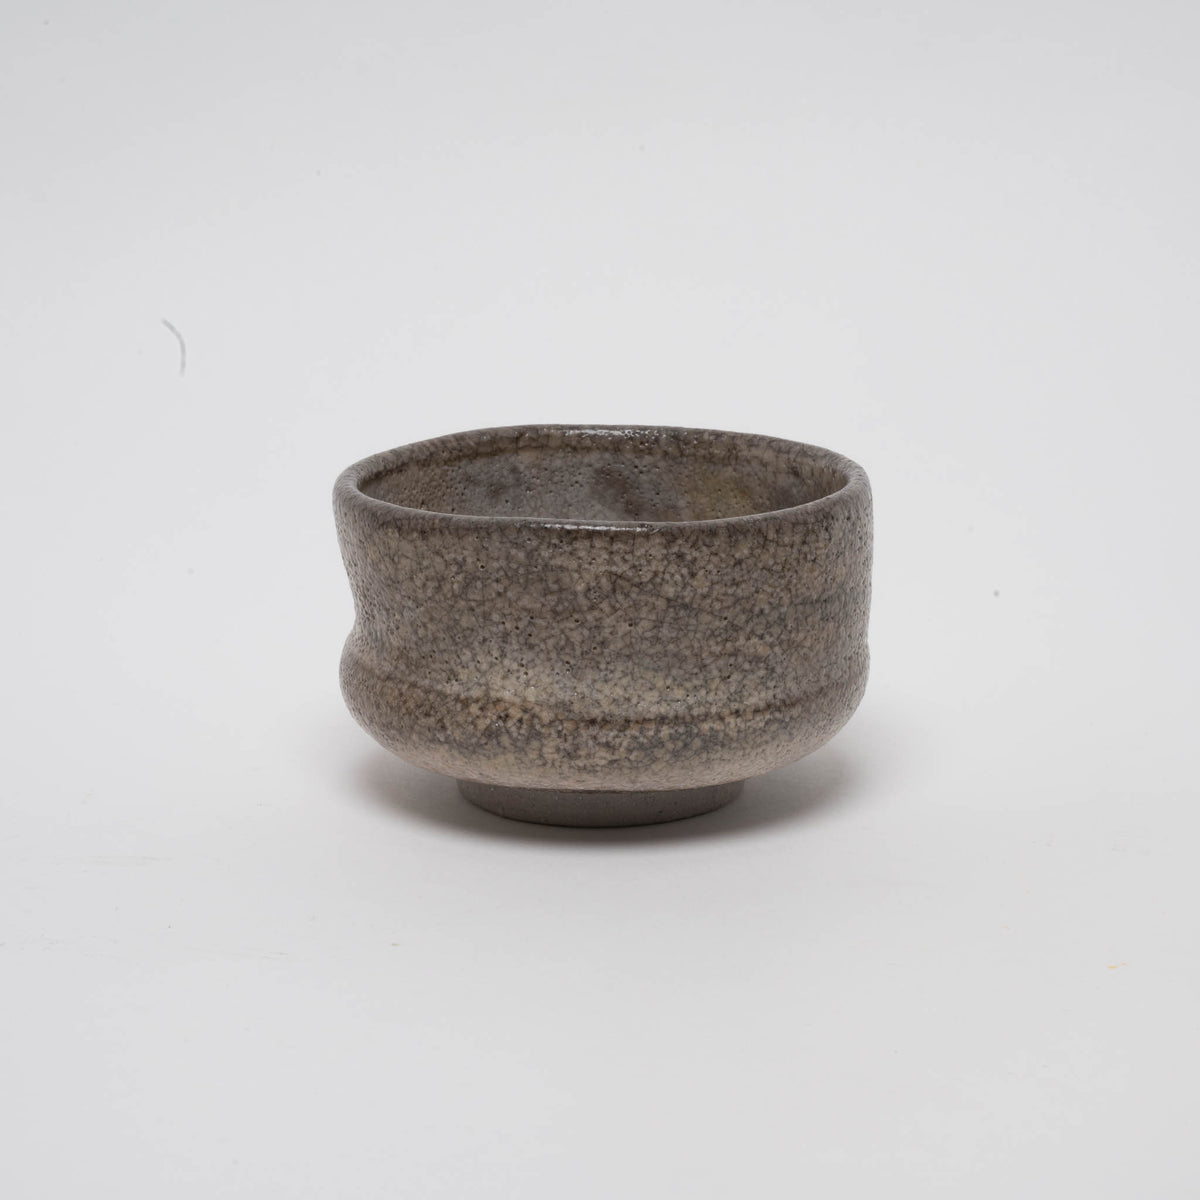 Stoneware matcha bowl